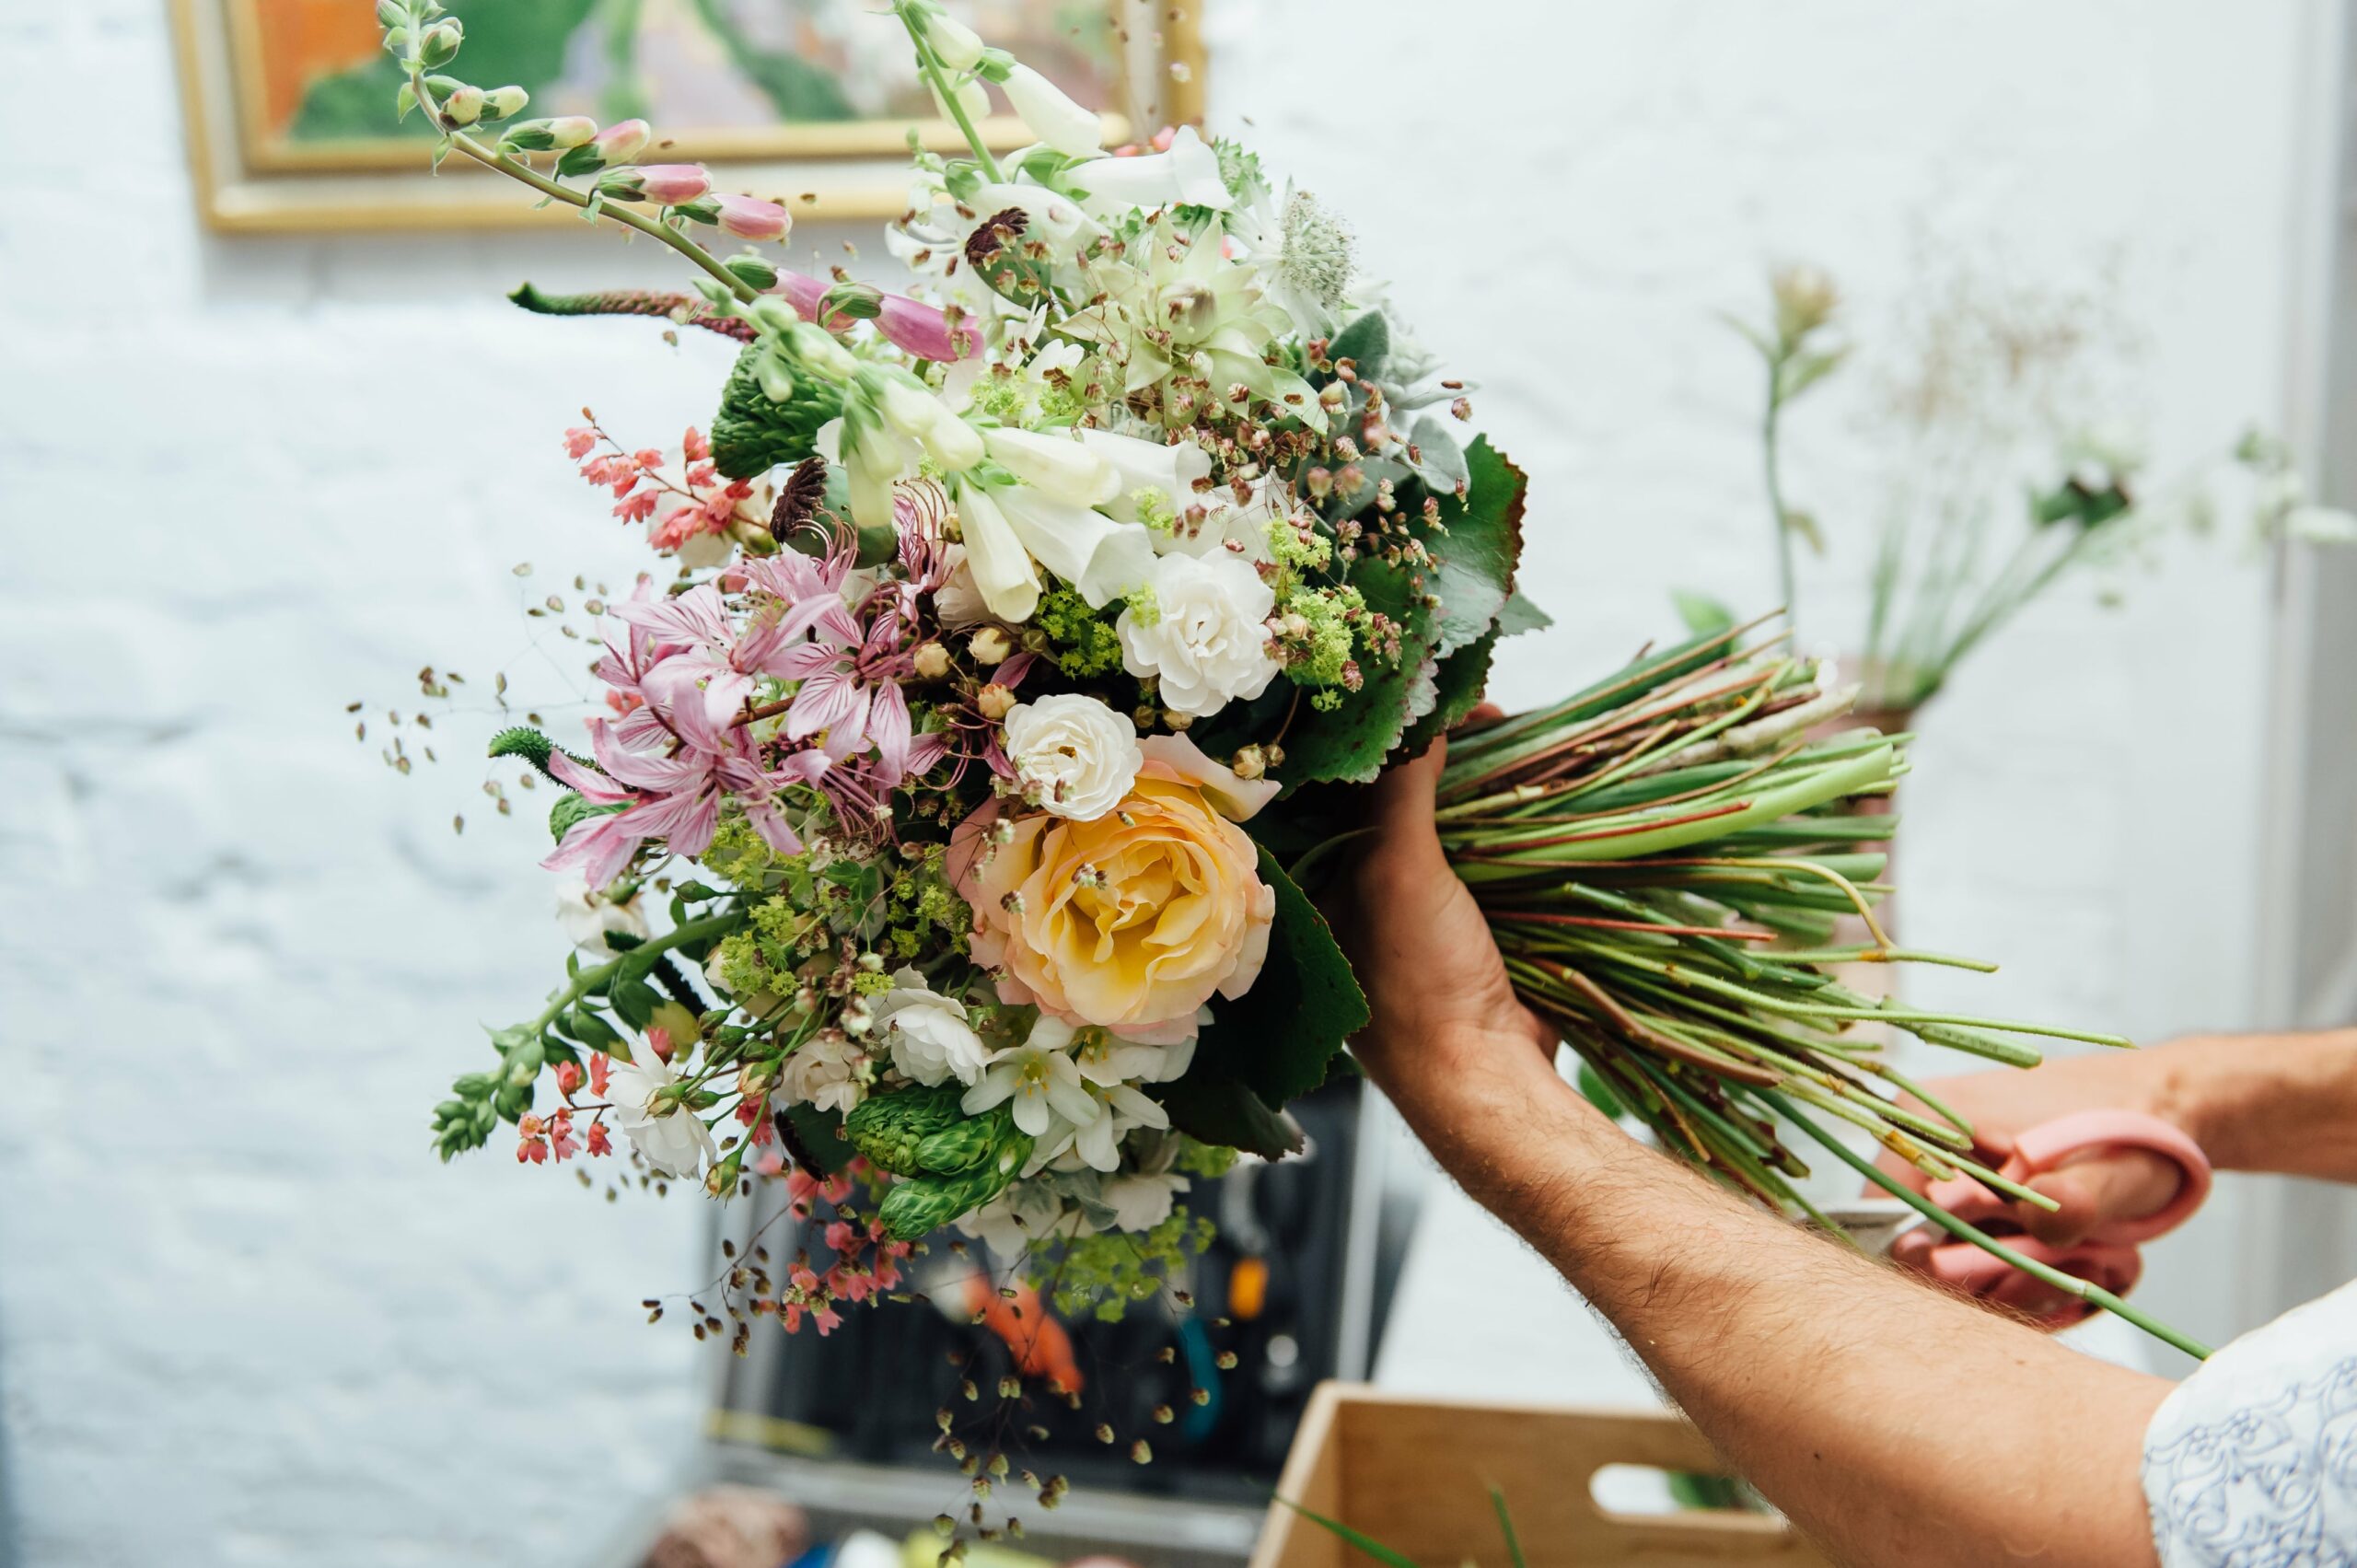 Bridebook.co.uk florist making up wedding bouquet